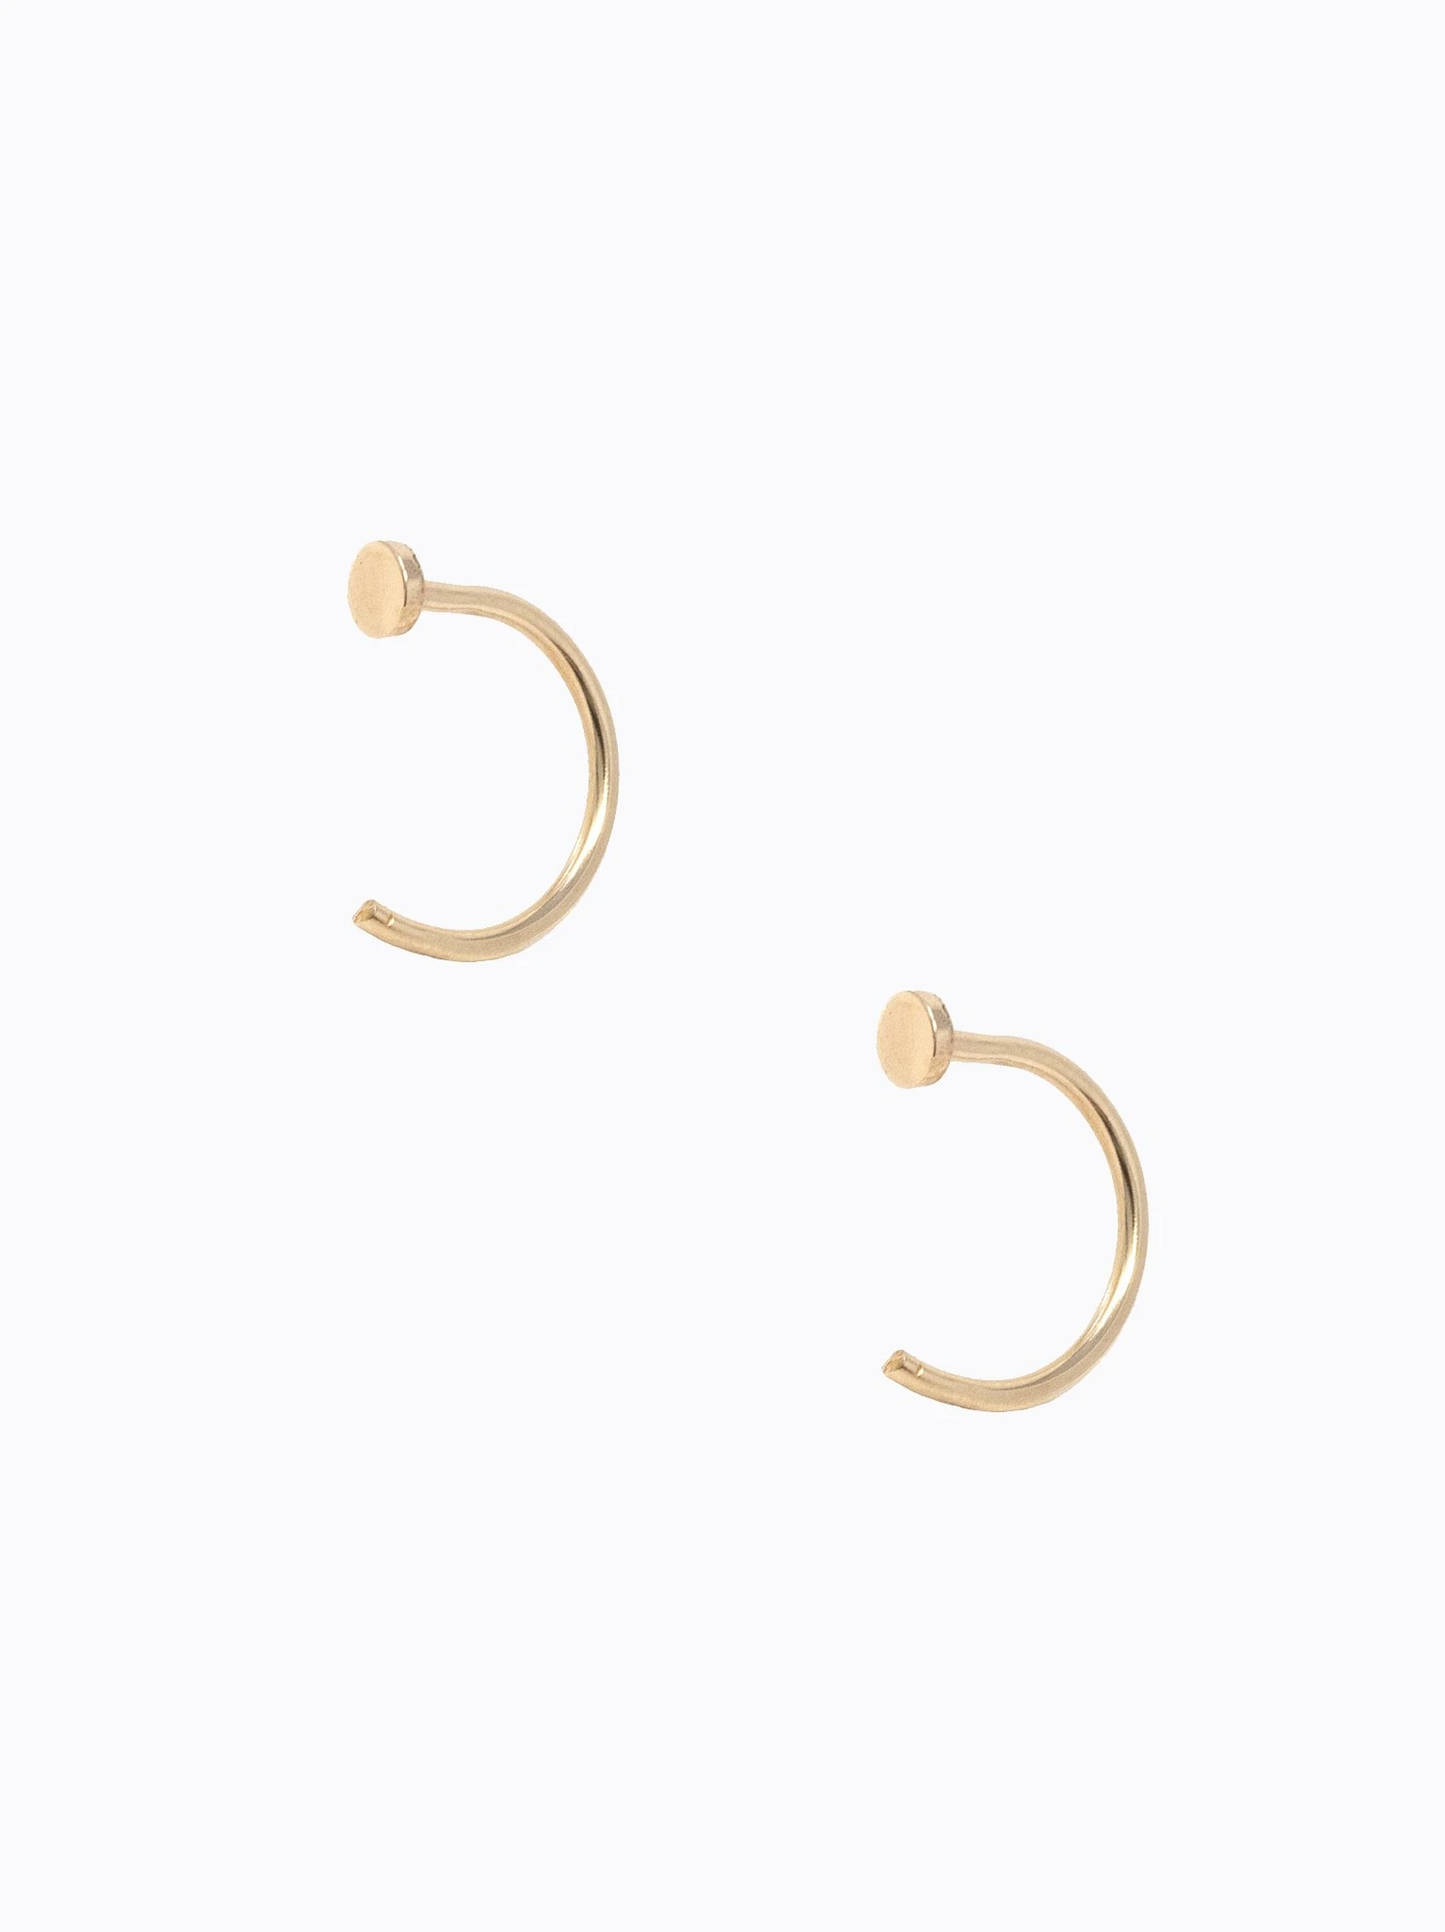 Illusion Hoop Earrings in Gold